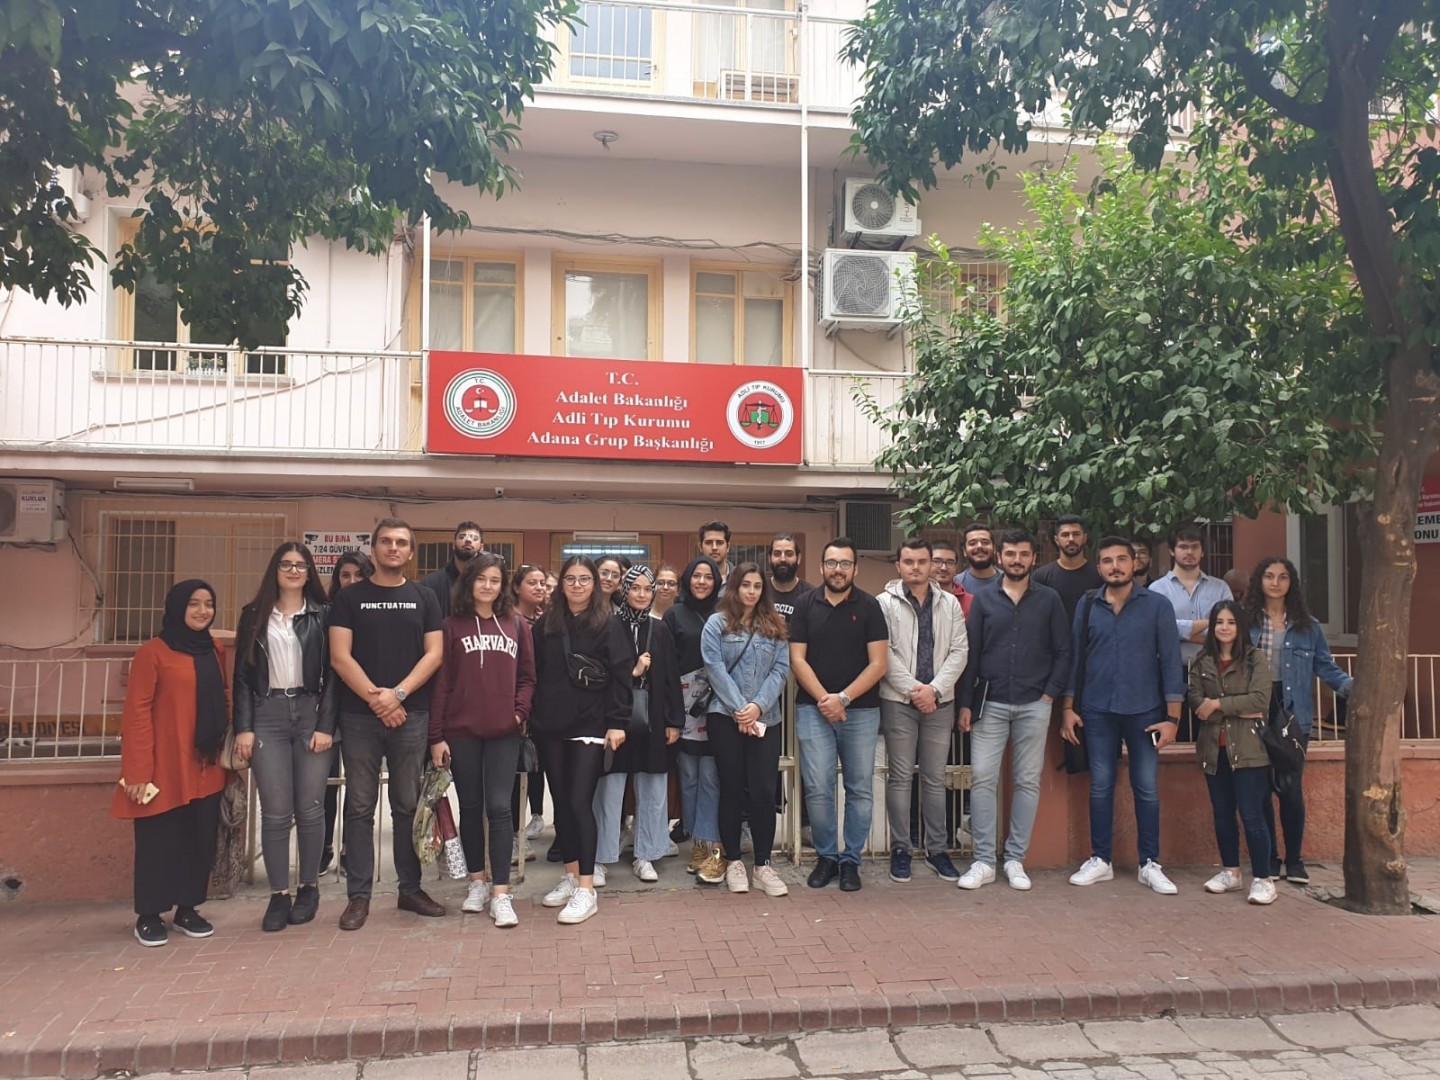 4. Sınıf Öğrencilerimiz Adli Tıp Dersi kapsamında Adli Tıp Kurumu Adana Grup Başkanlığına giderek uygulamalar hakkında bilgi aldılar.